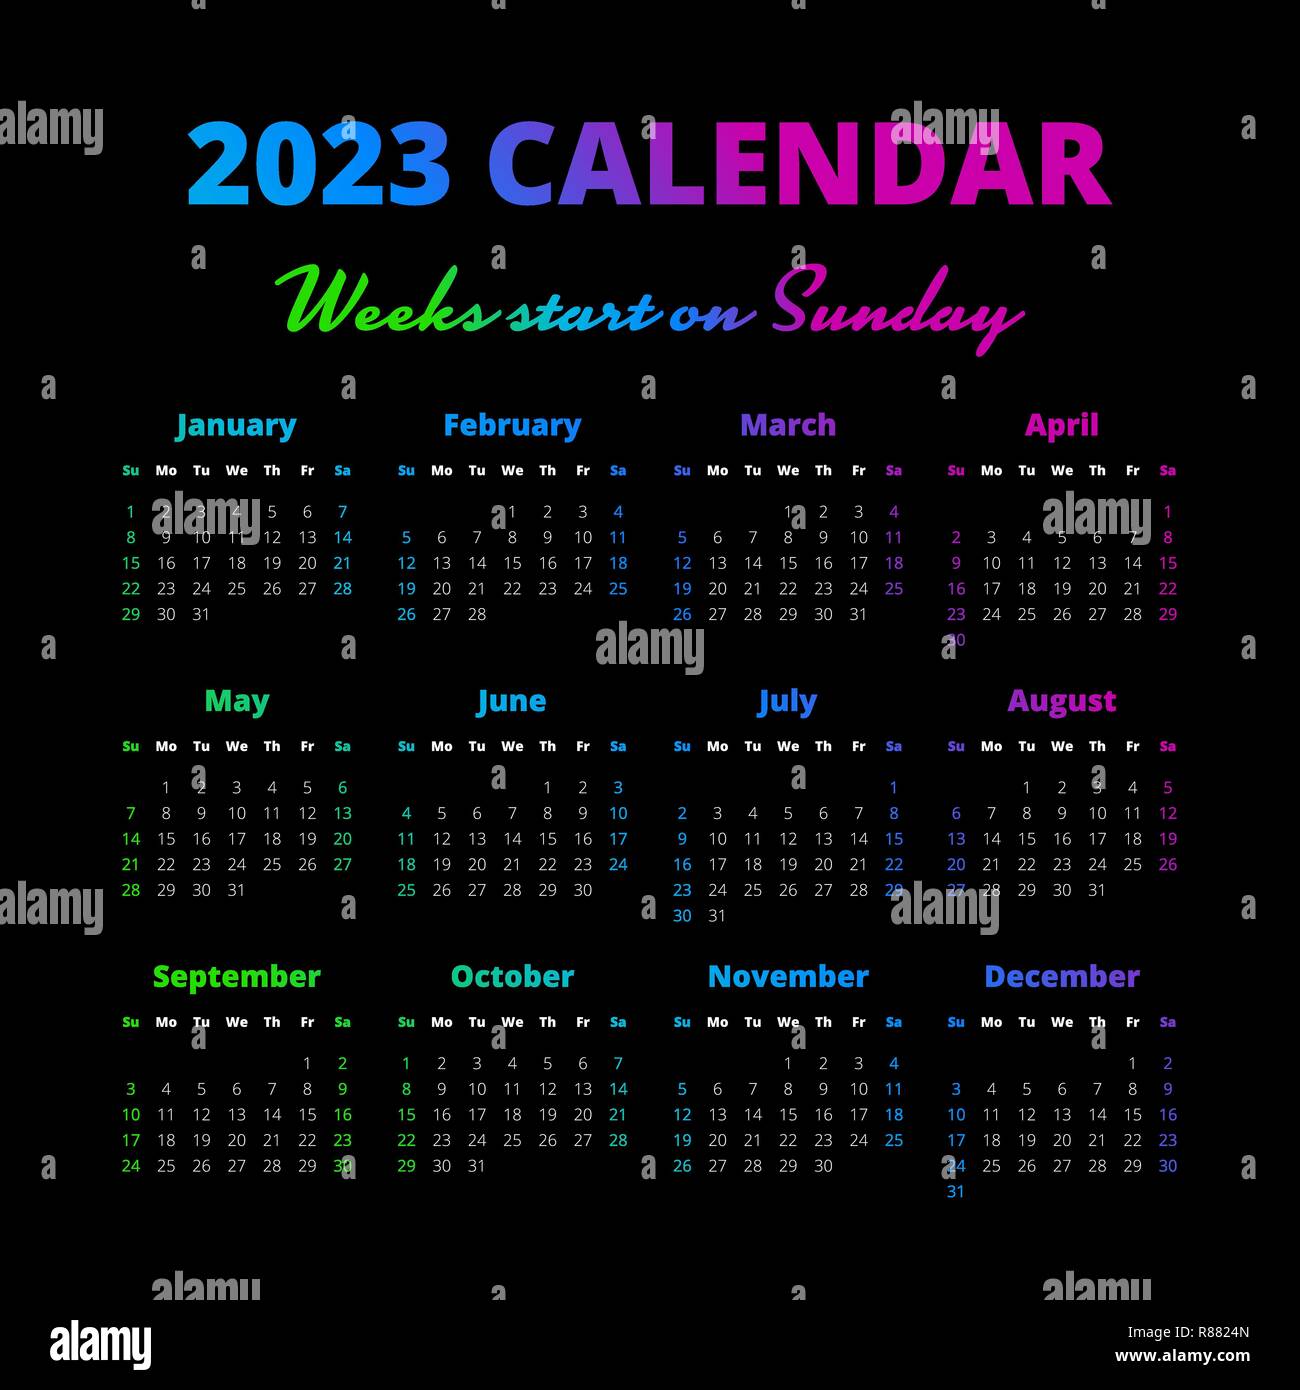 Lịch năm 2024 đơn giản trên nền đen: Bạn yêu thích sự đơn giản và trang nhã? Bạn không thích những thứ quá cầu kỳ và phức tạp? Đôi khi, đơn giản mới là vẻ đẹp đích thực và chiếc lịch năm 2024 đơn giản trên nền đen sẽ chứng tỏ điều đó cho bạn.